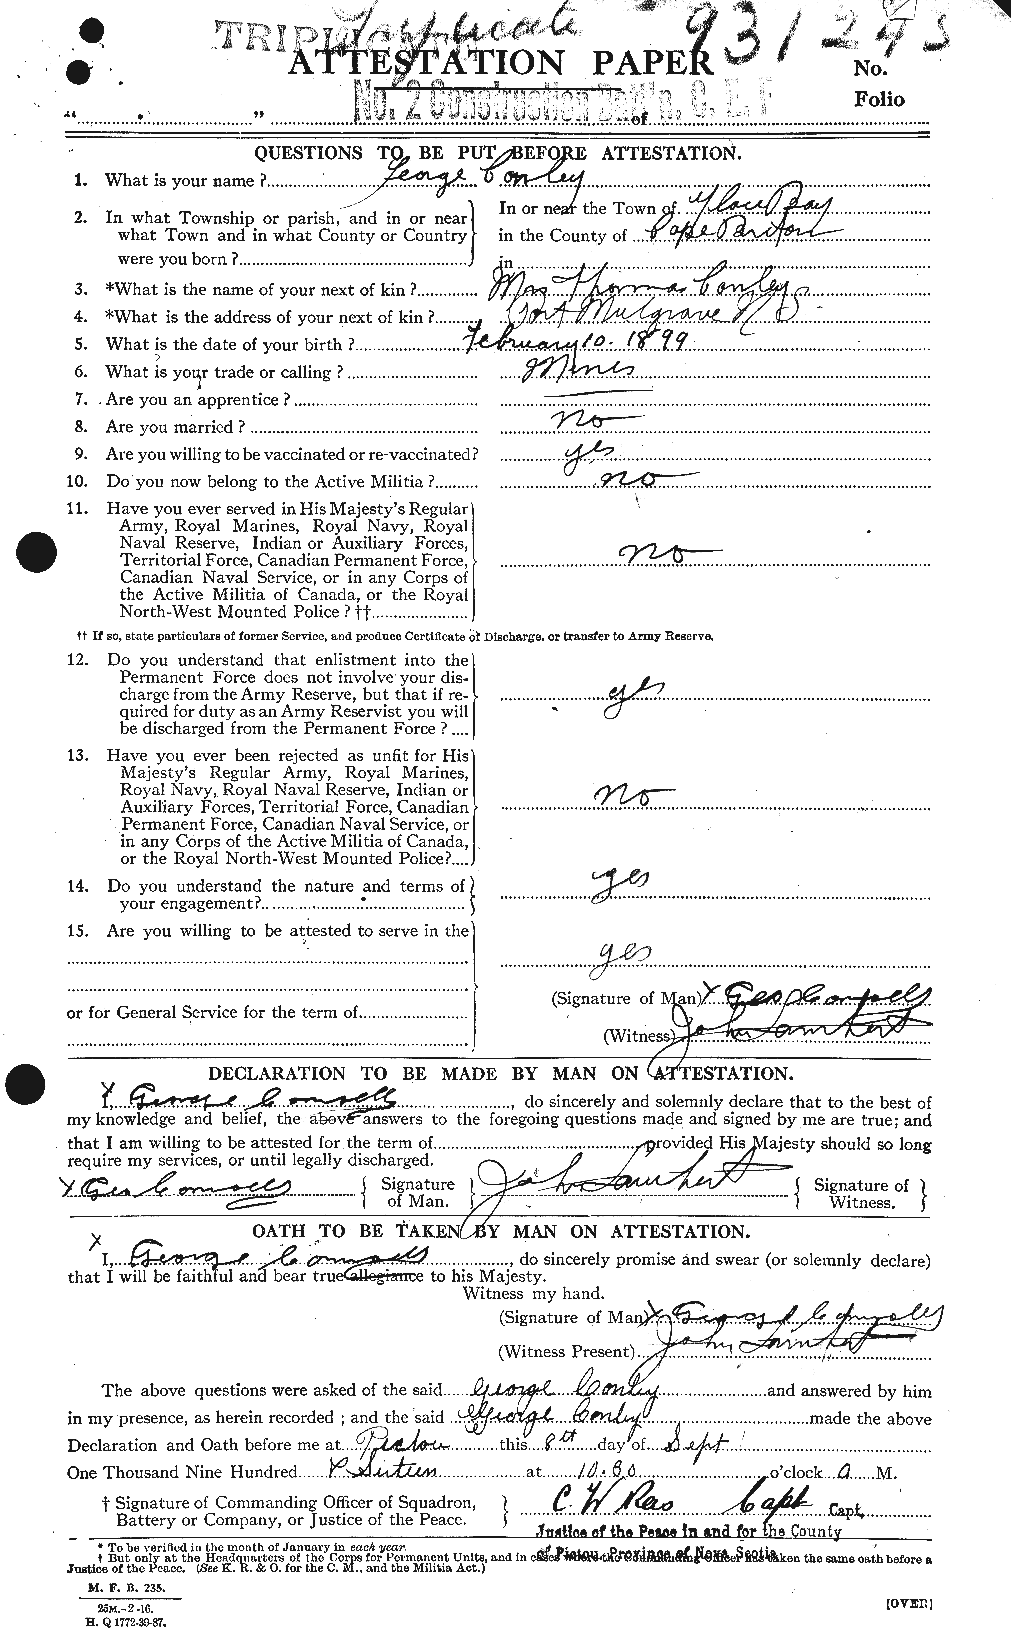 Dossiers du Personnel de la Première Guerre mondiale - CEC 067846a